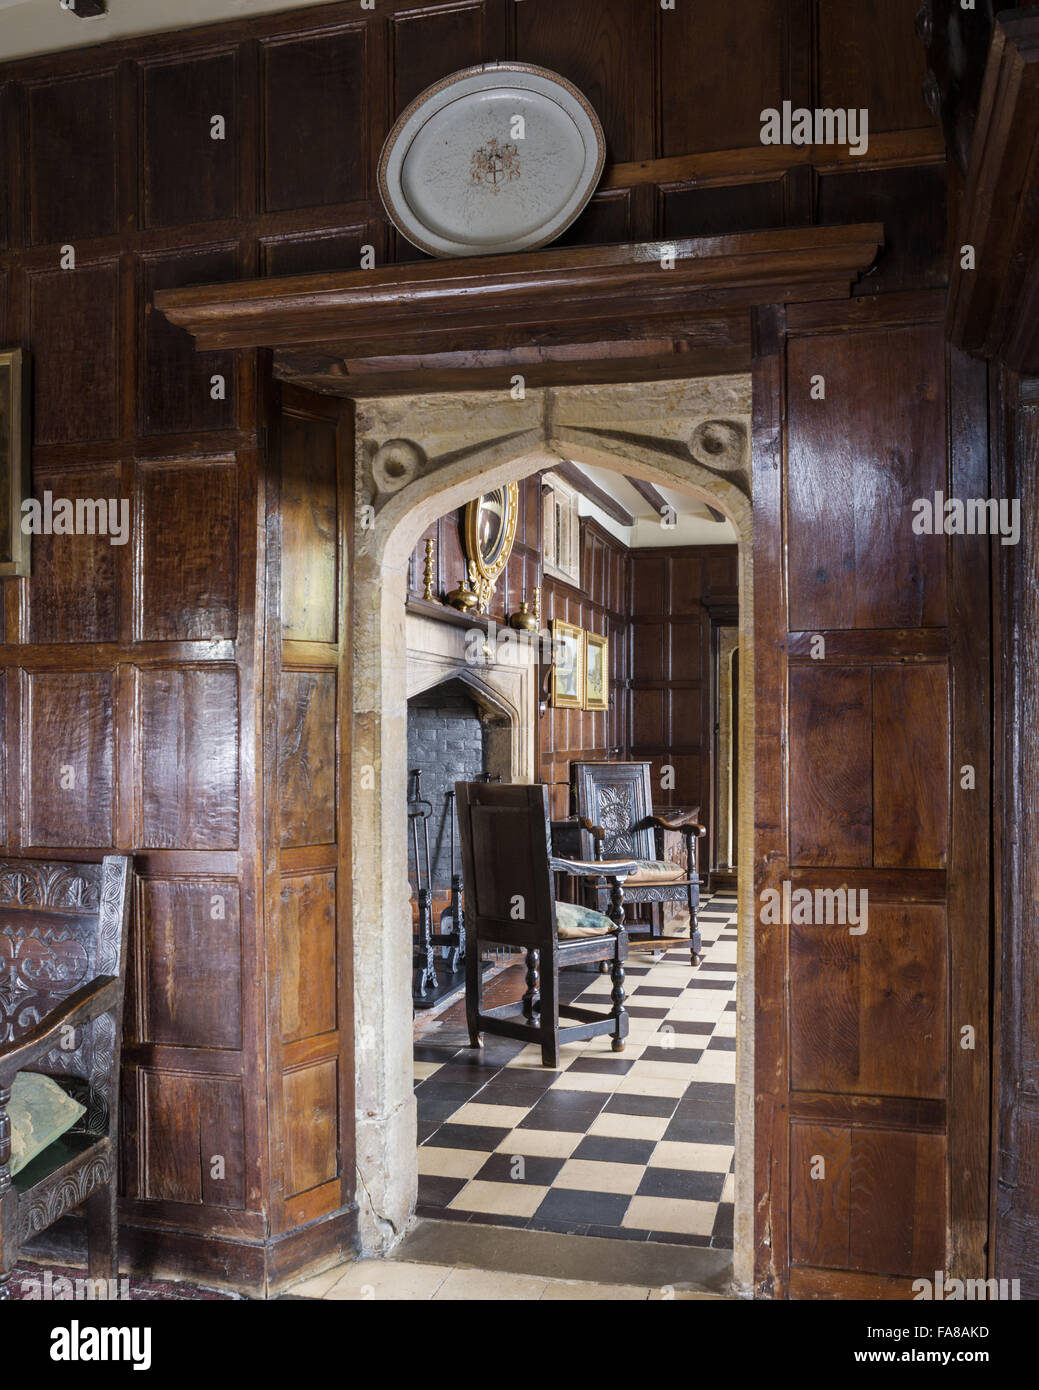 Vue de la salle depuis l'intérieur à l'Hall à Bateman's, East Sussex. Bateman's était la maison de l'écrivain Rudyard Kipling de 1902 à 1936. Banque D'Images